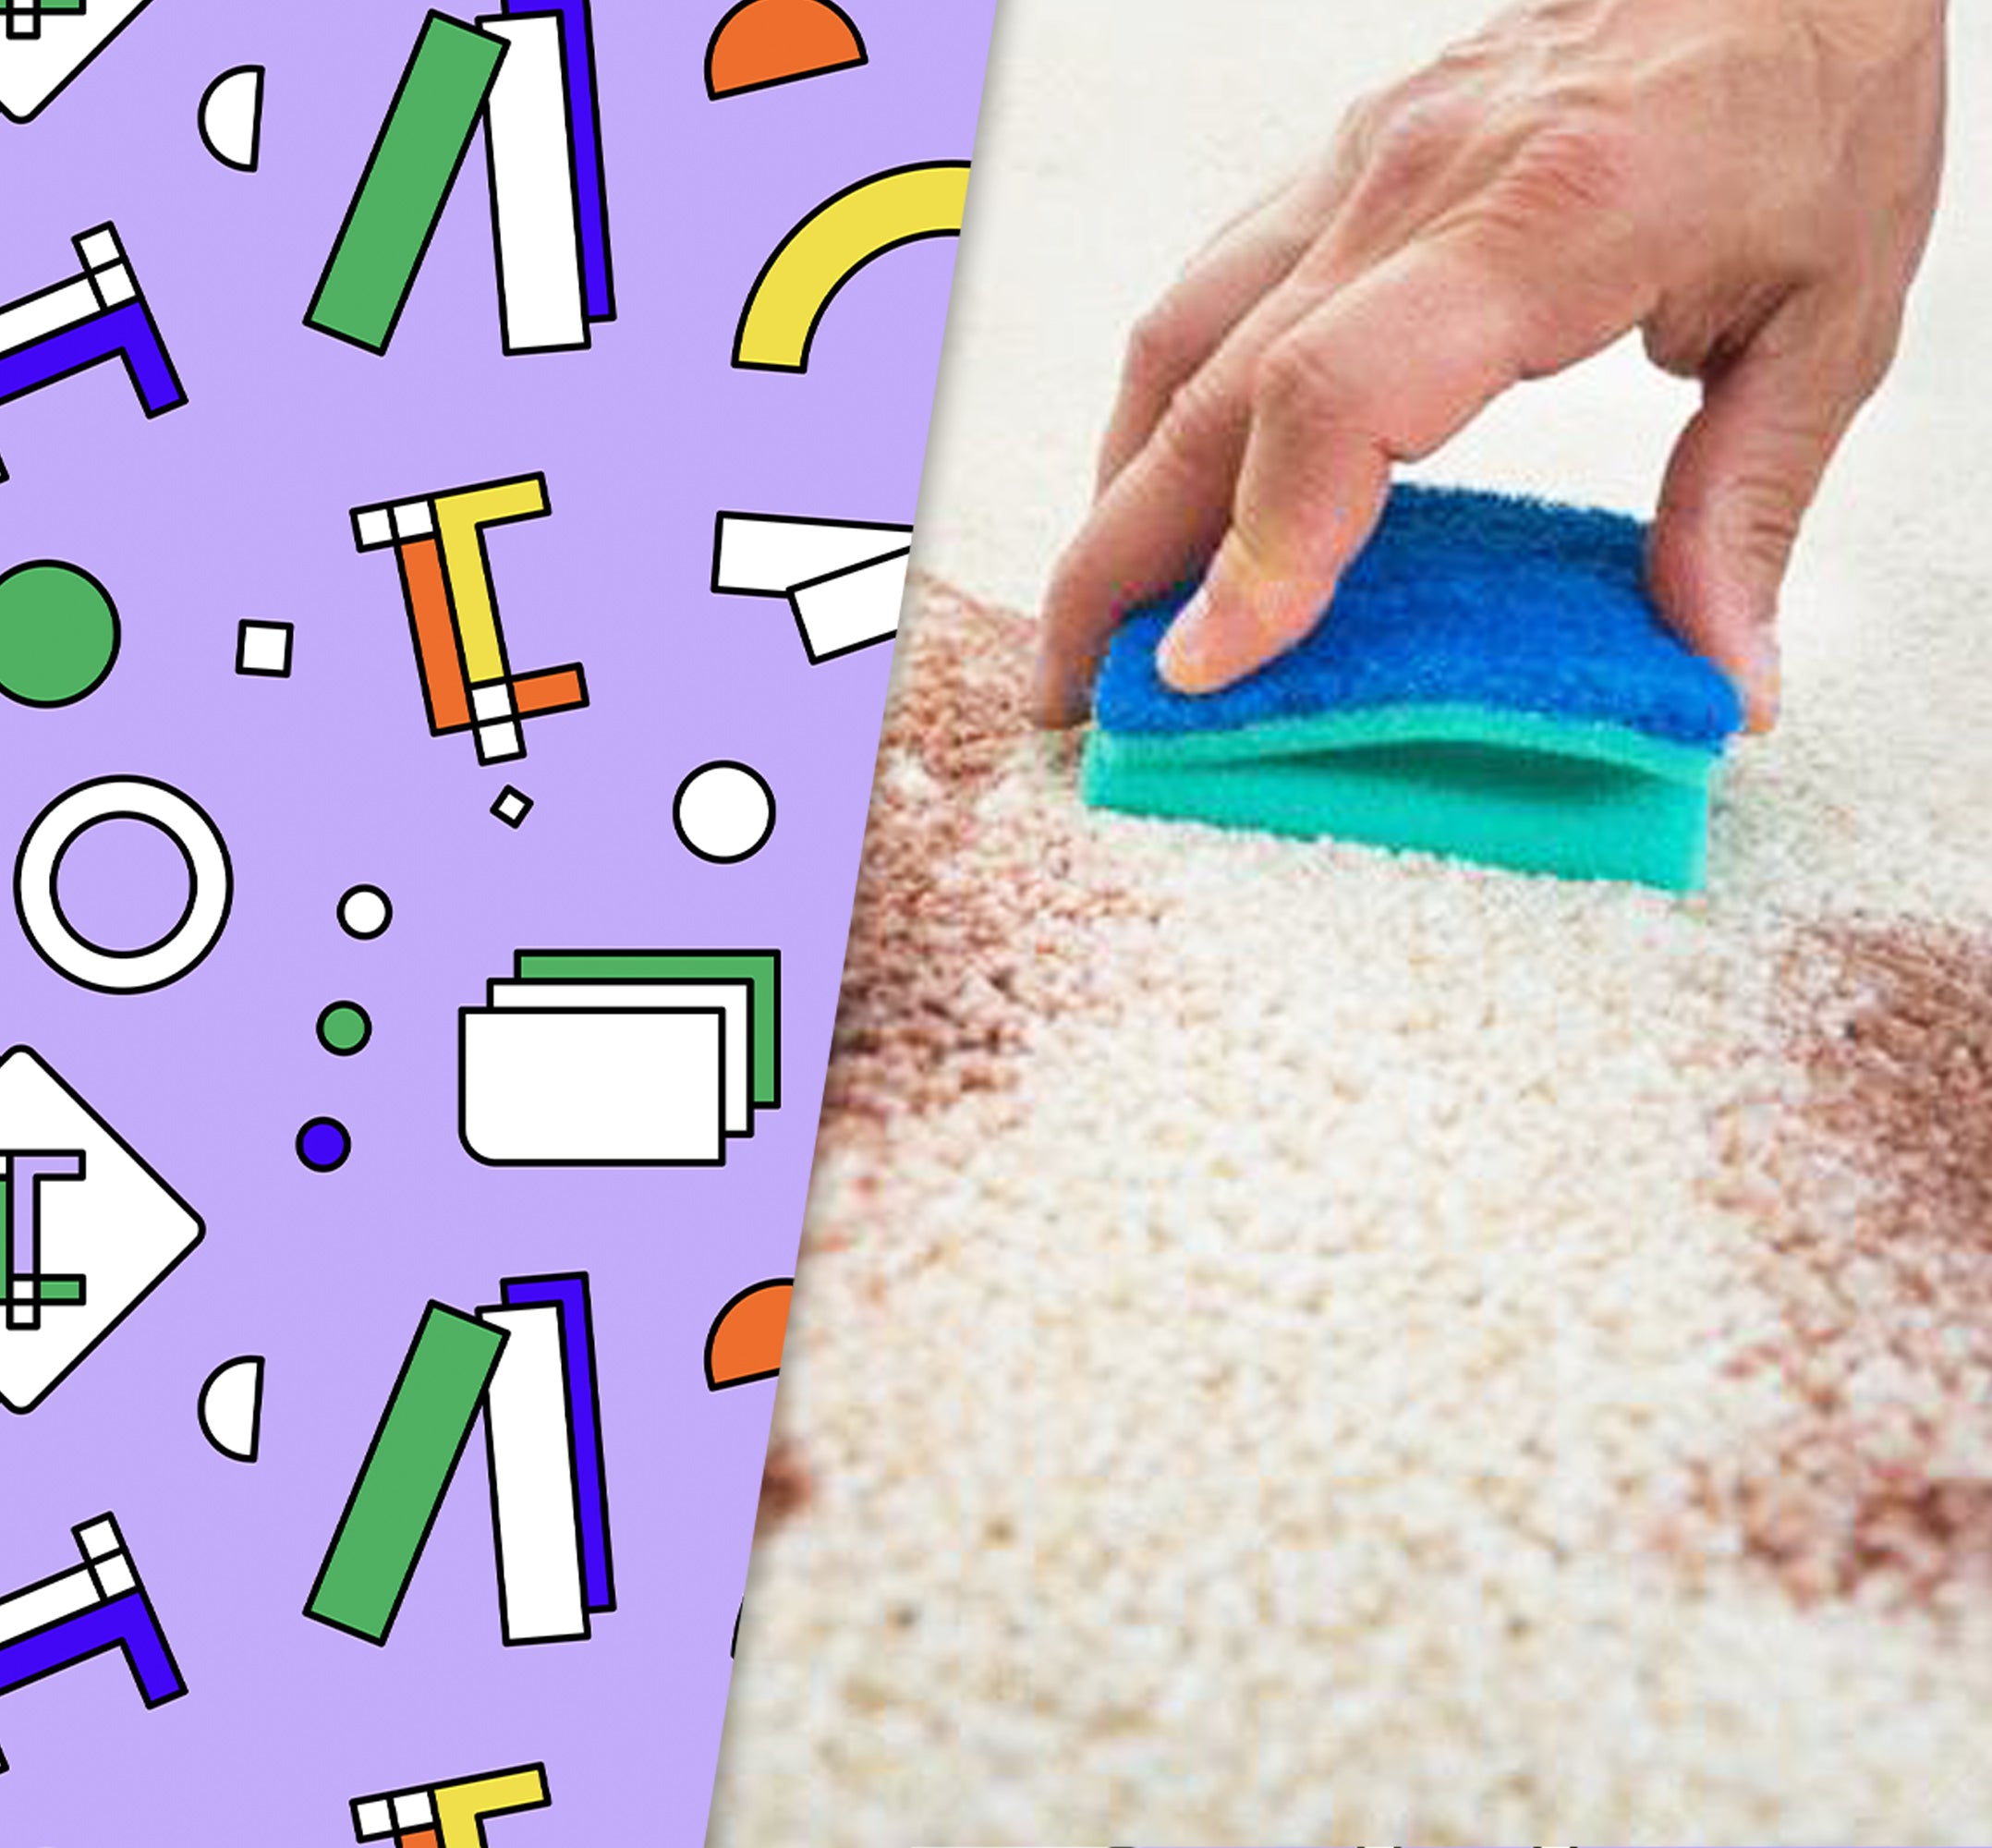 Comment entretenir et nettoyer votre tapis tufté?